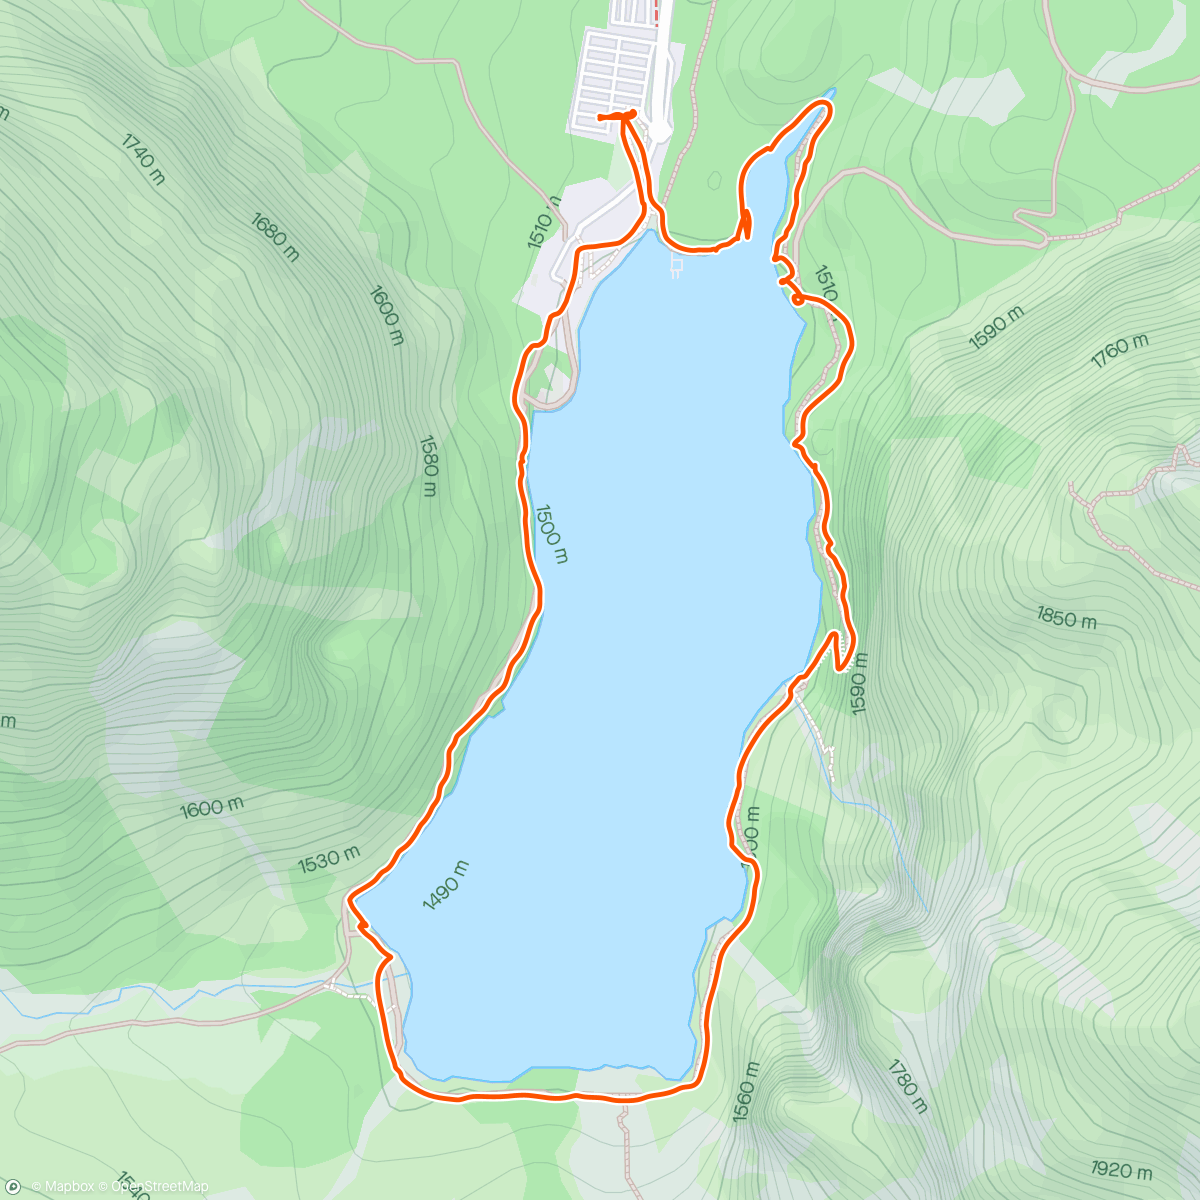 「Lago di Braies」活動的地圖